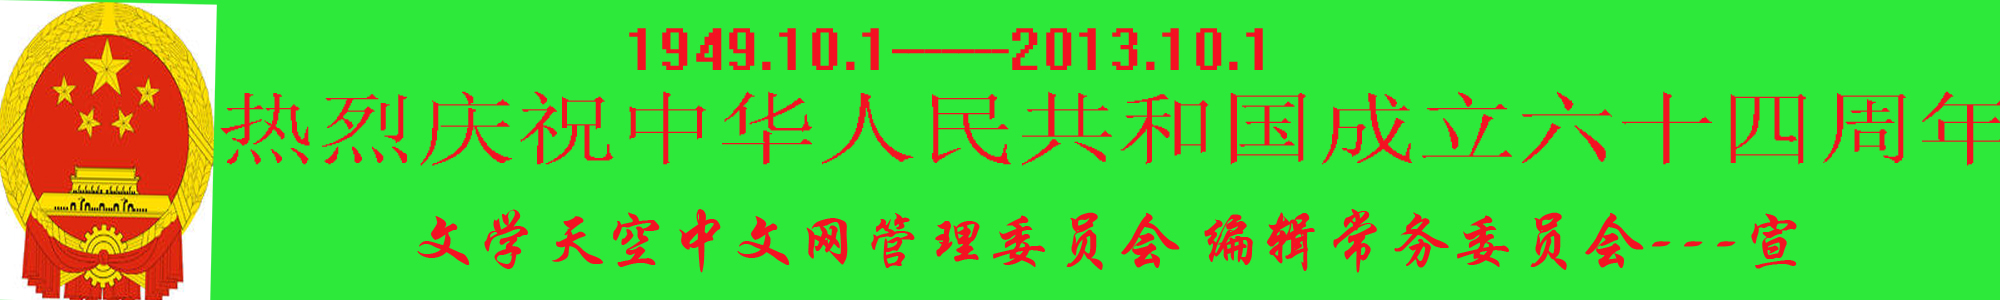 熱烈慶祝中華人民共和國成立64周年